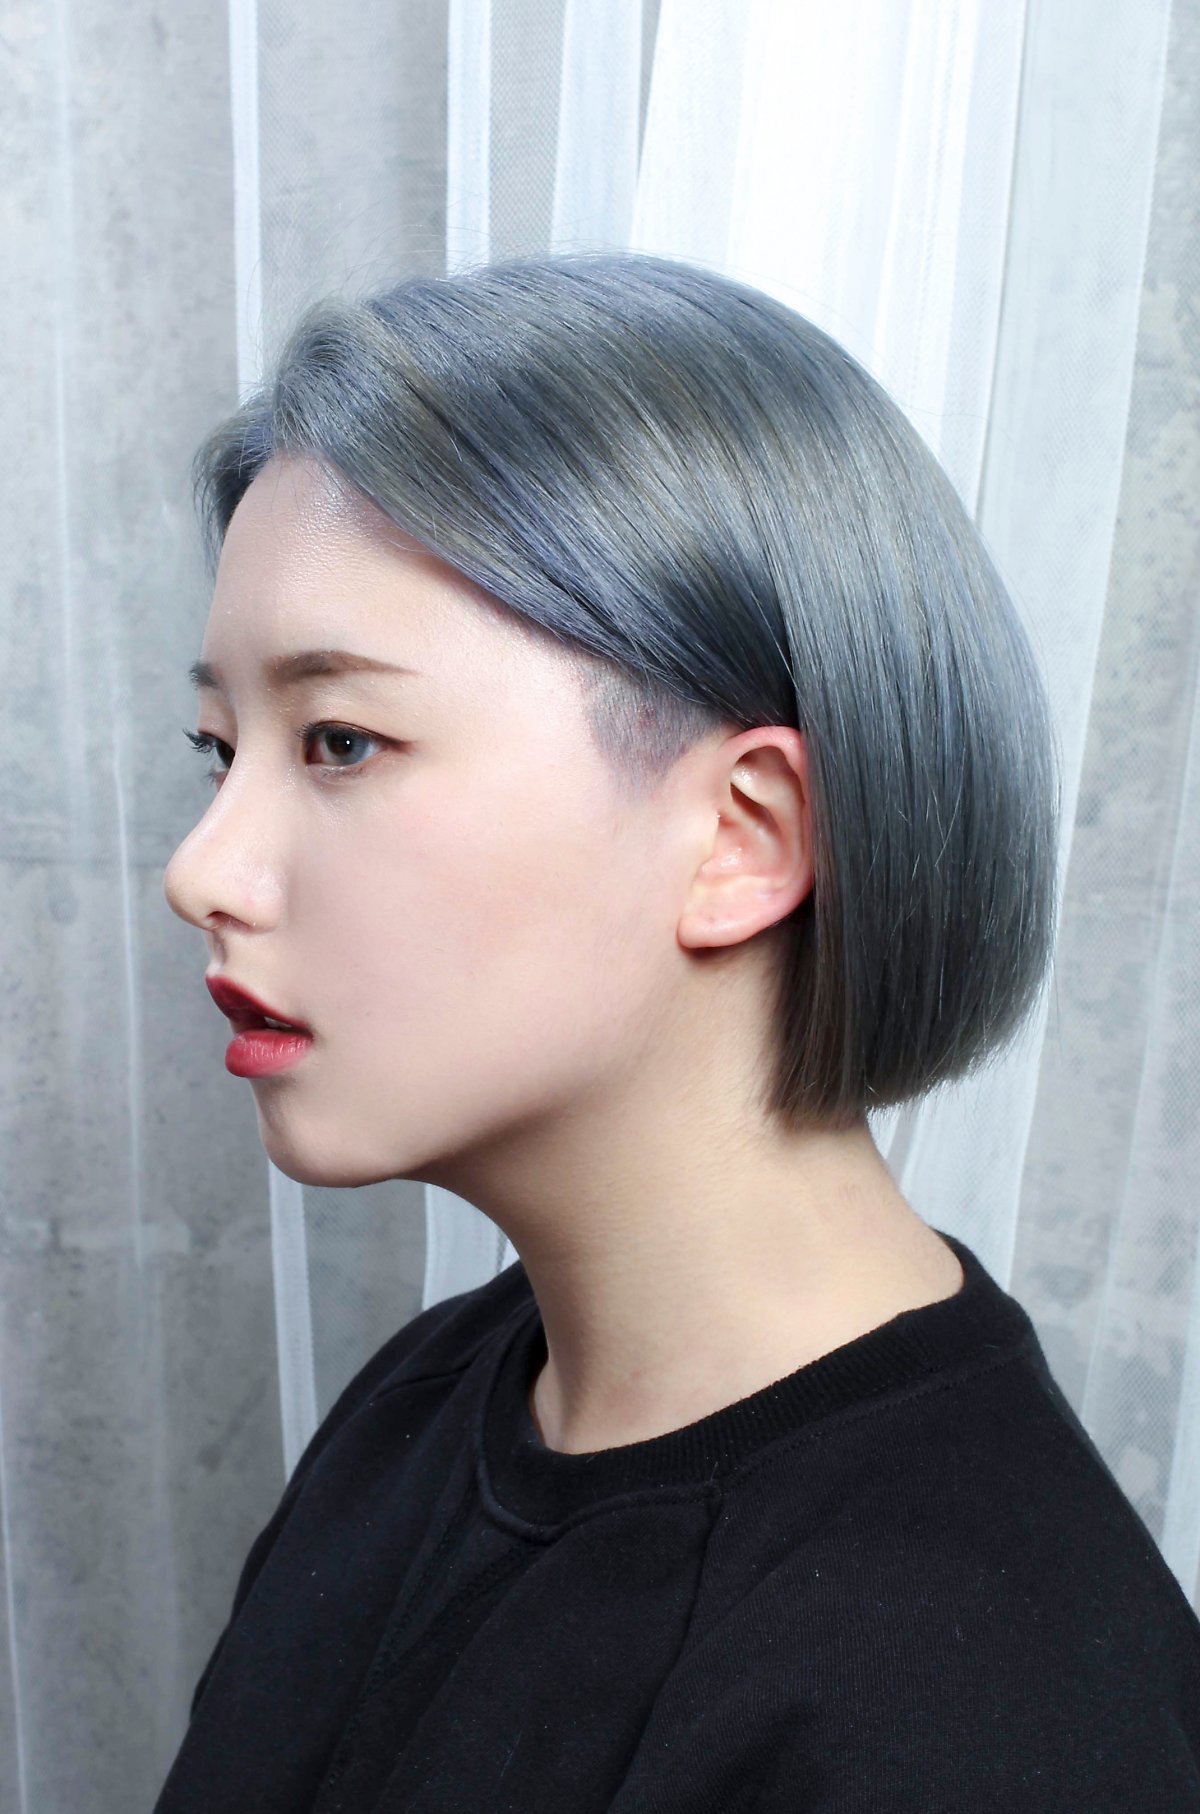 思わず真似したくなる超キュートな韓国風オルチャンの髪型の高画質画像まとめ 写真まとめサイト Pictas